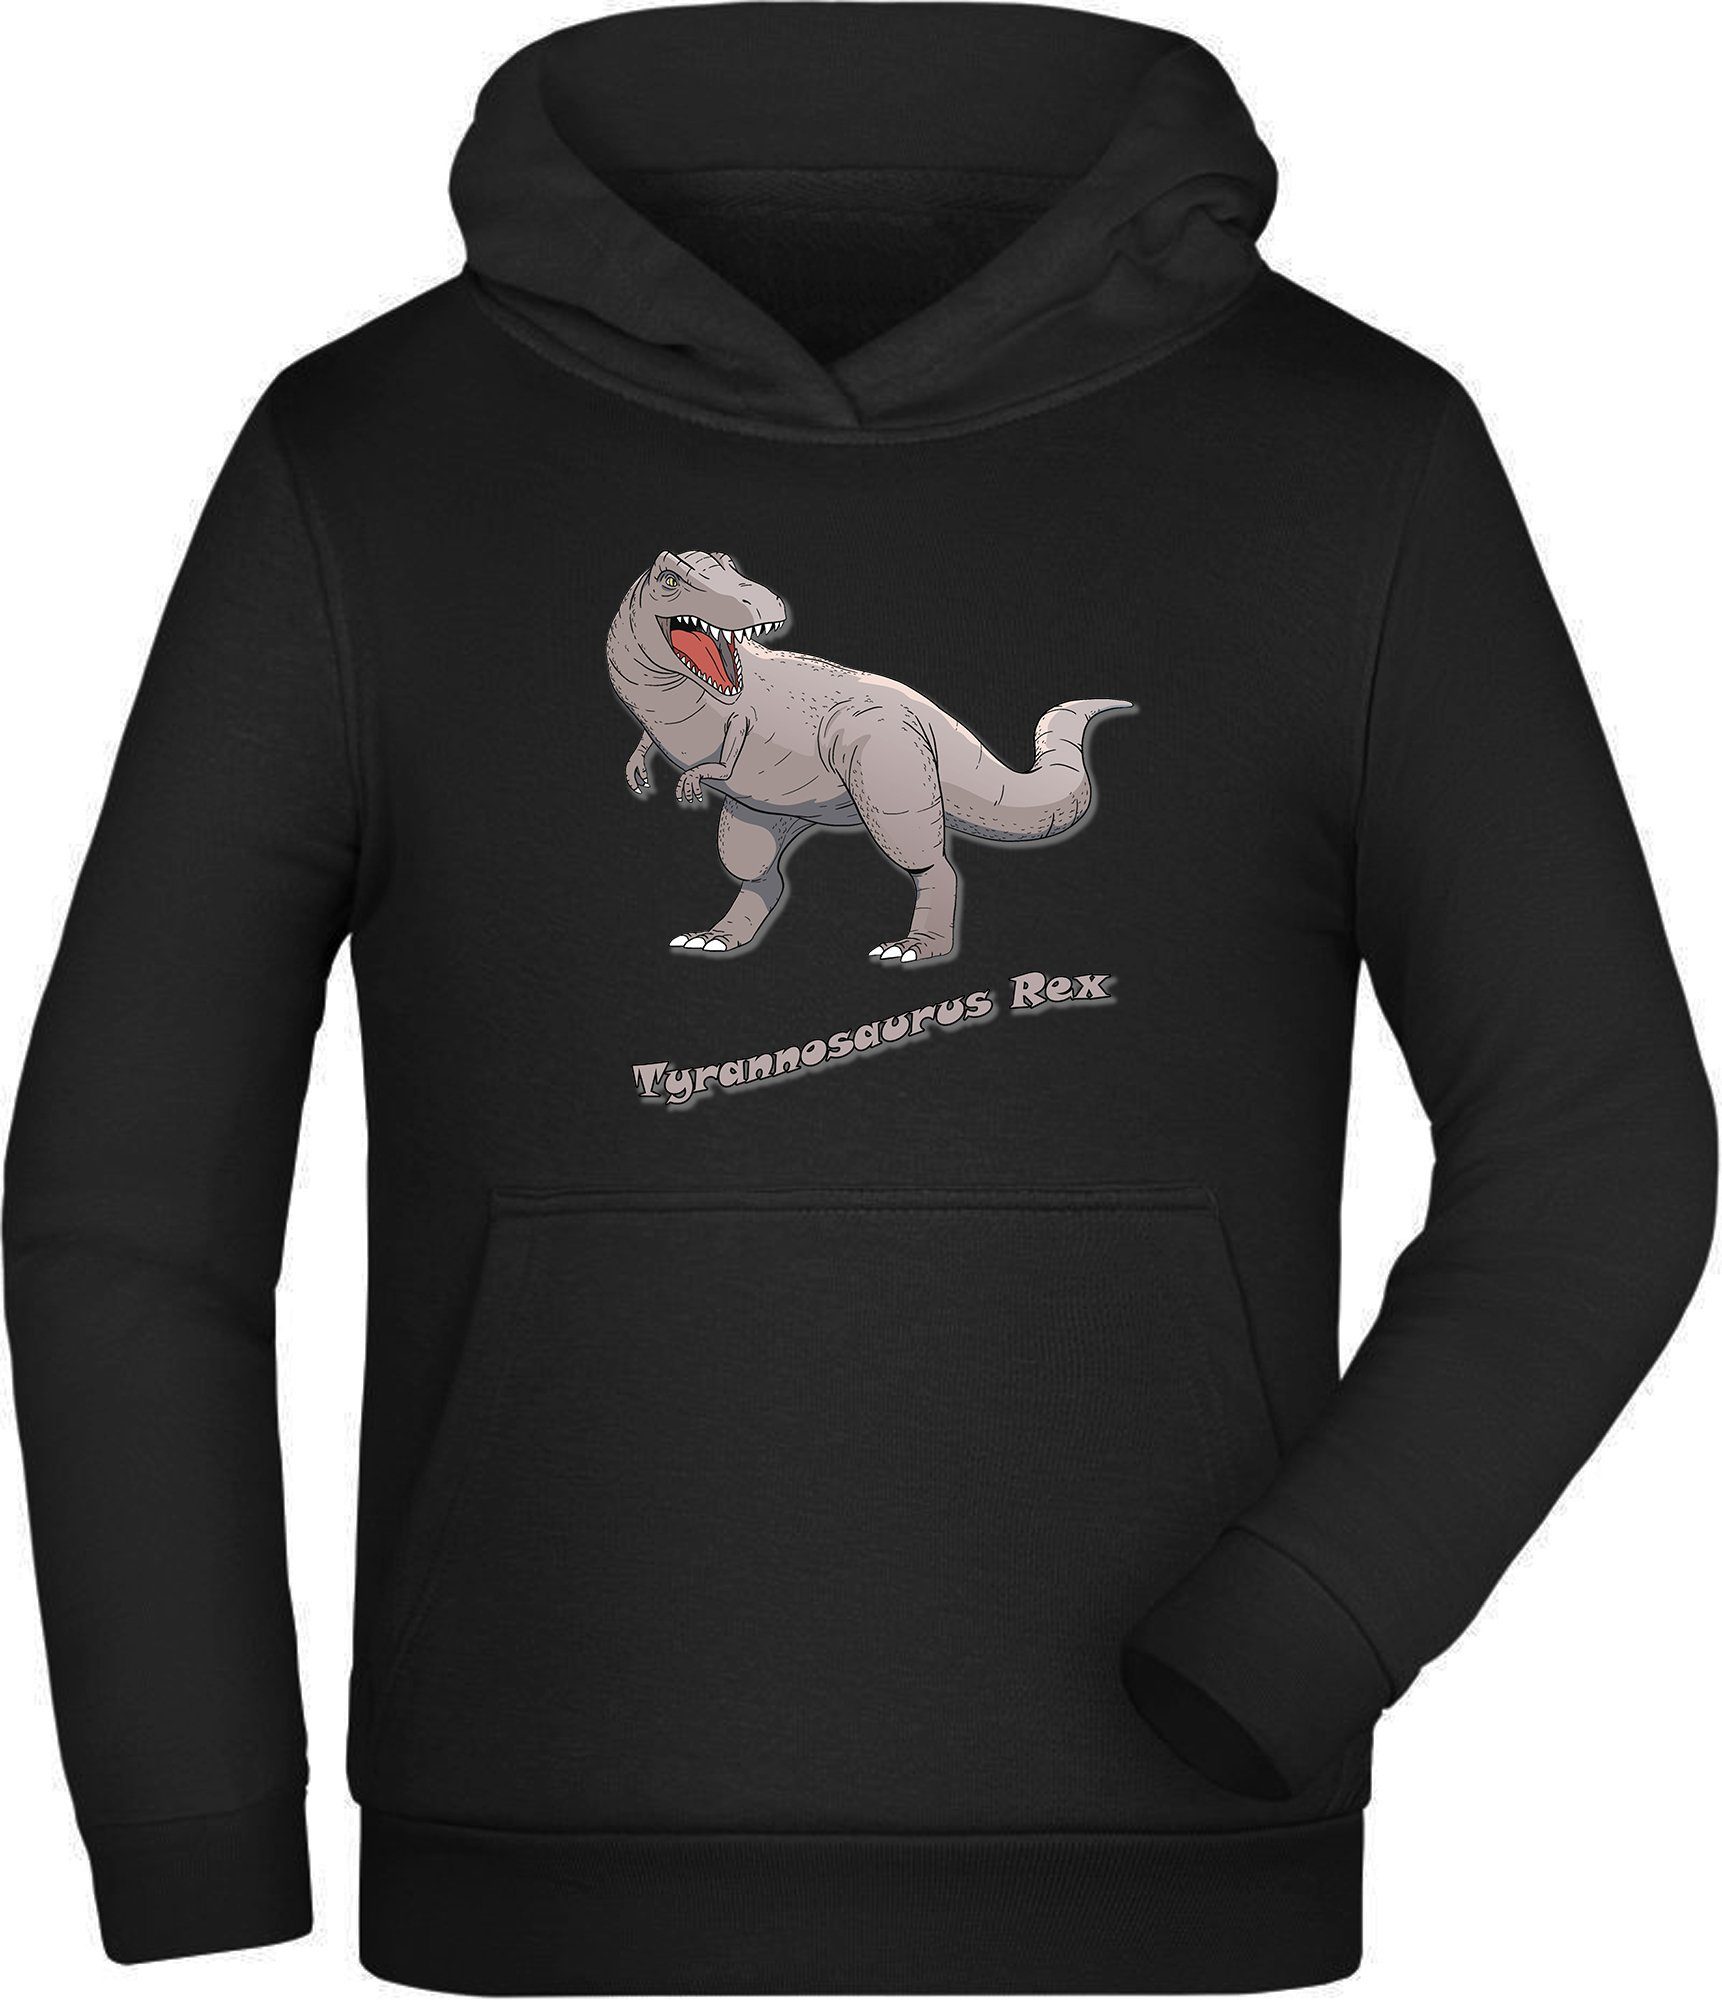 MyDesign24 Hoodie Kinder Kapuzen Sweatshirt - Mit Tyrannosaurus Rex Print Kapuzensweater mit Aufdruck, i53